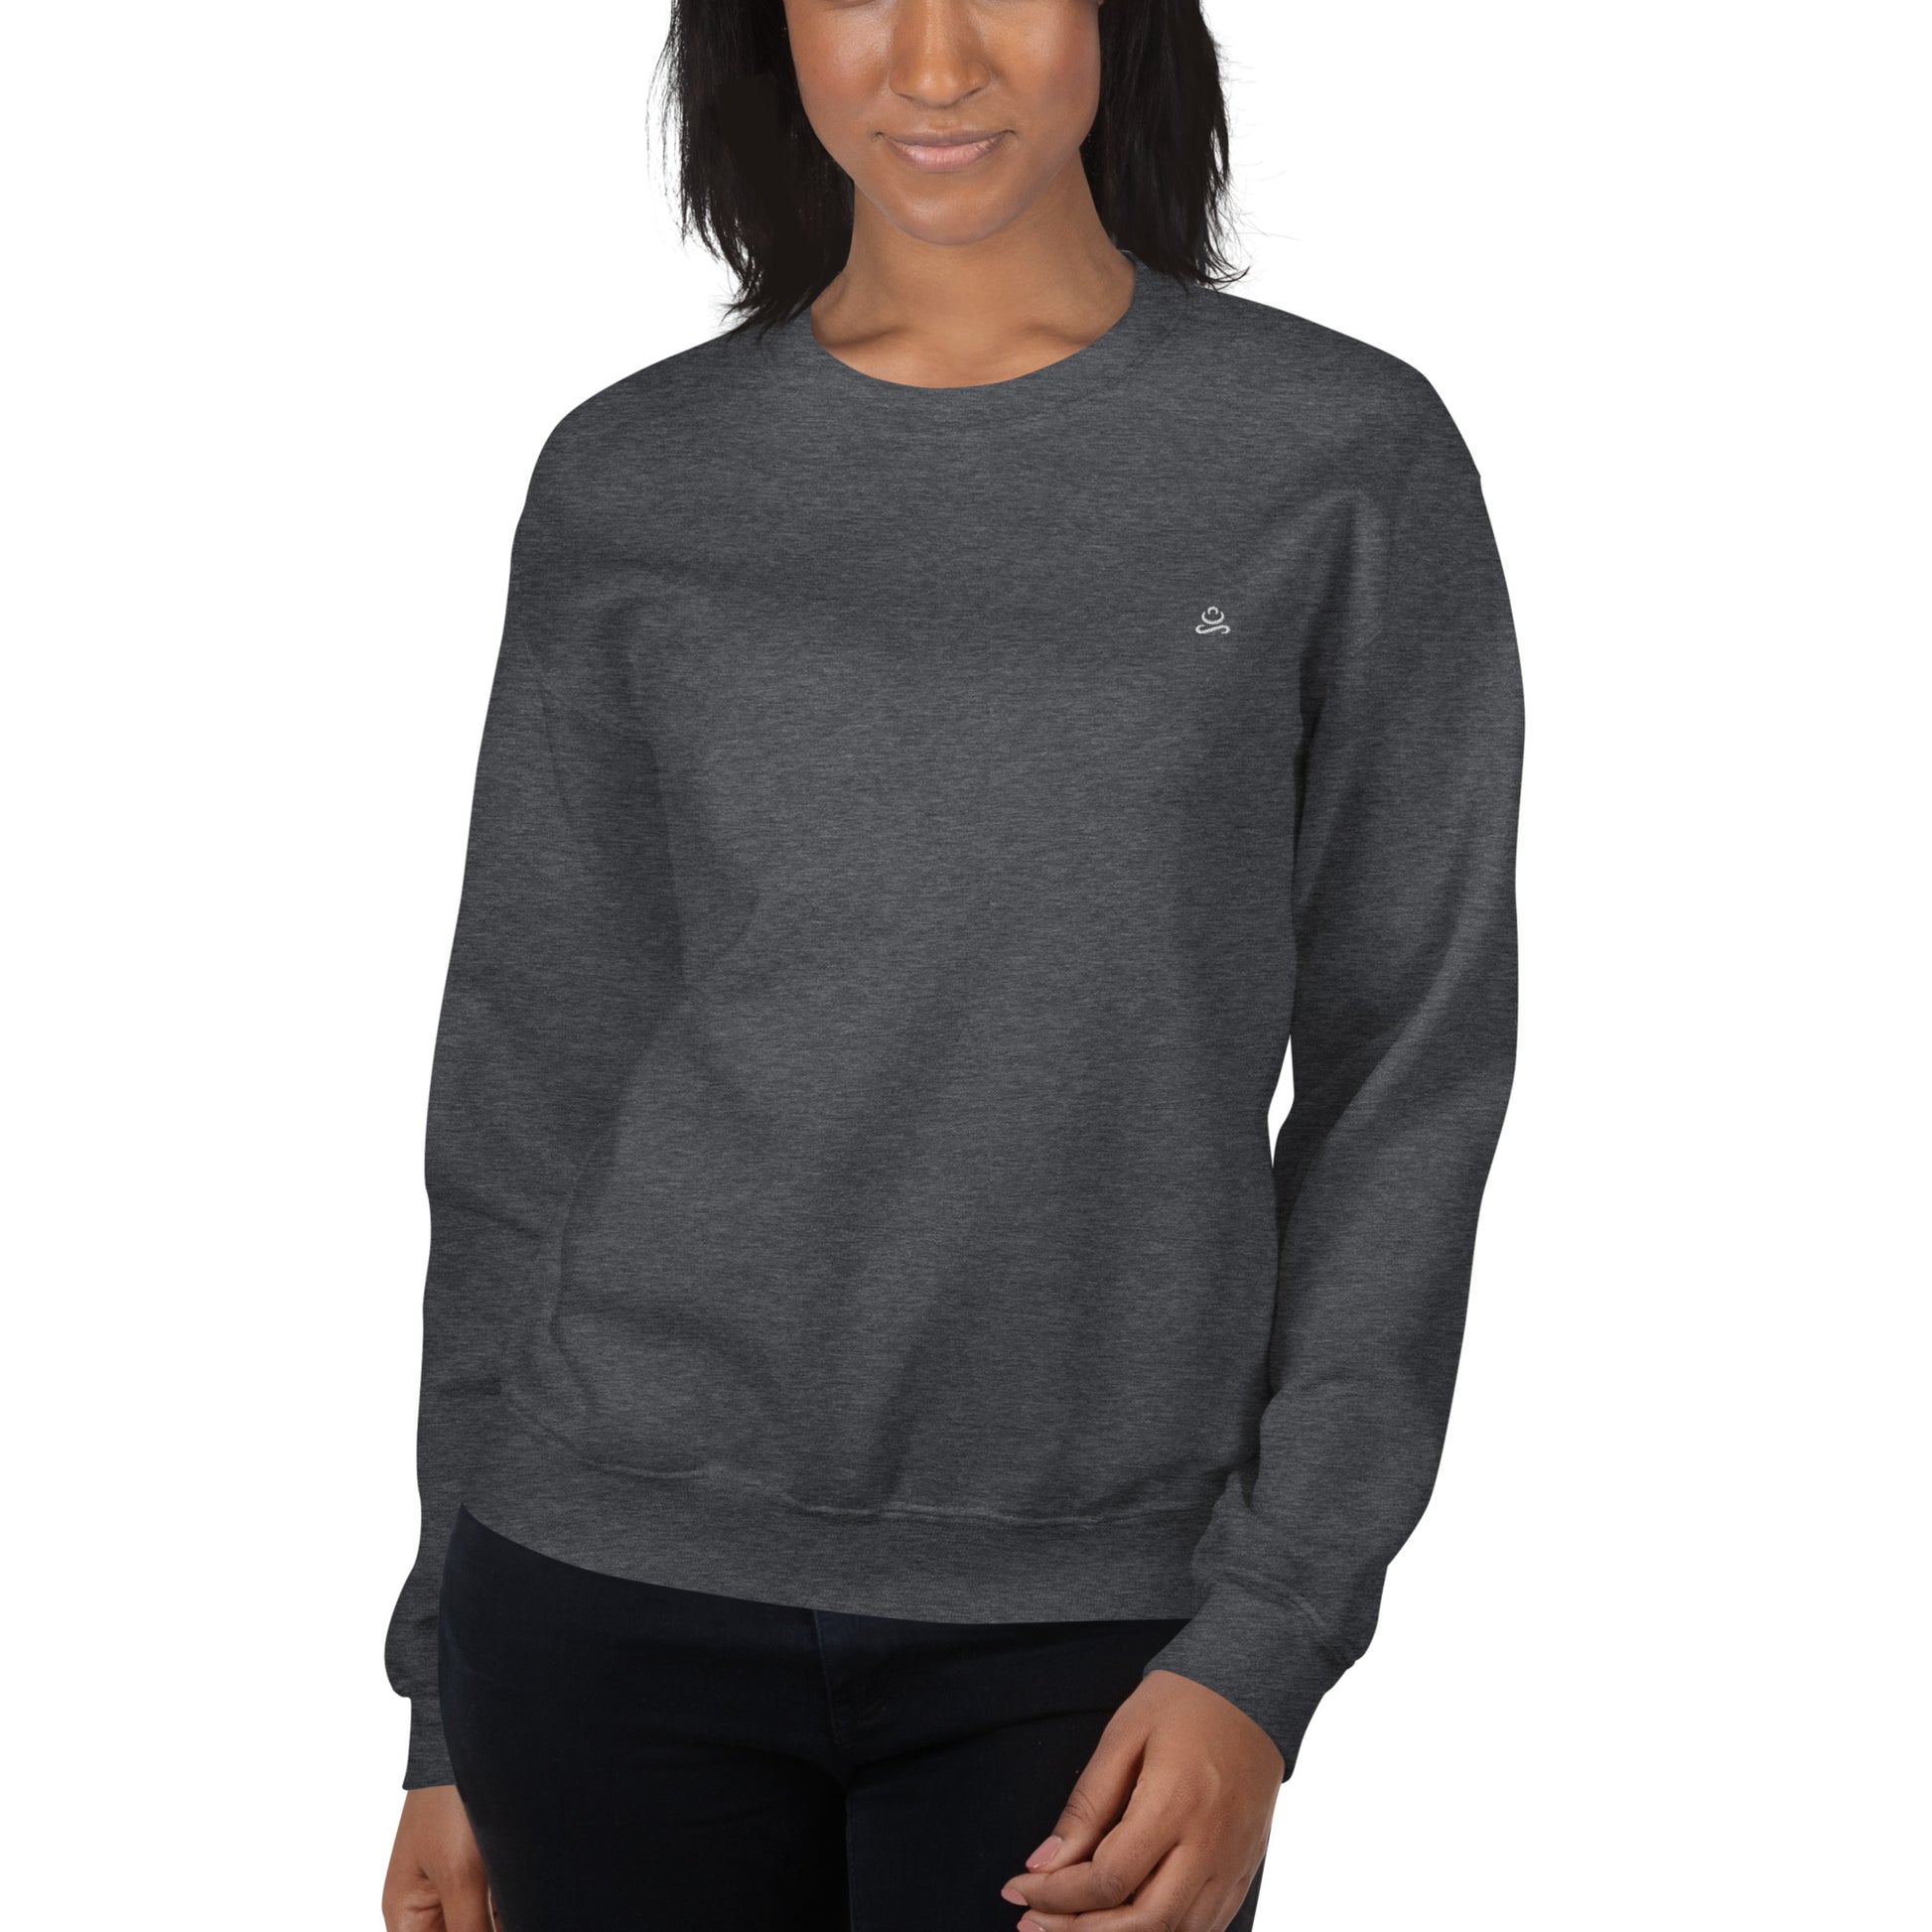 Dark Heather Women's Cotton Sweatshirt by Women's Cotton Sweatshirt sold by Jain Yoga